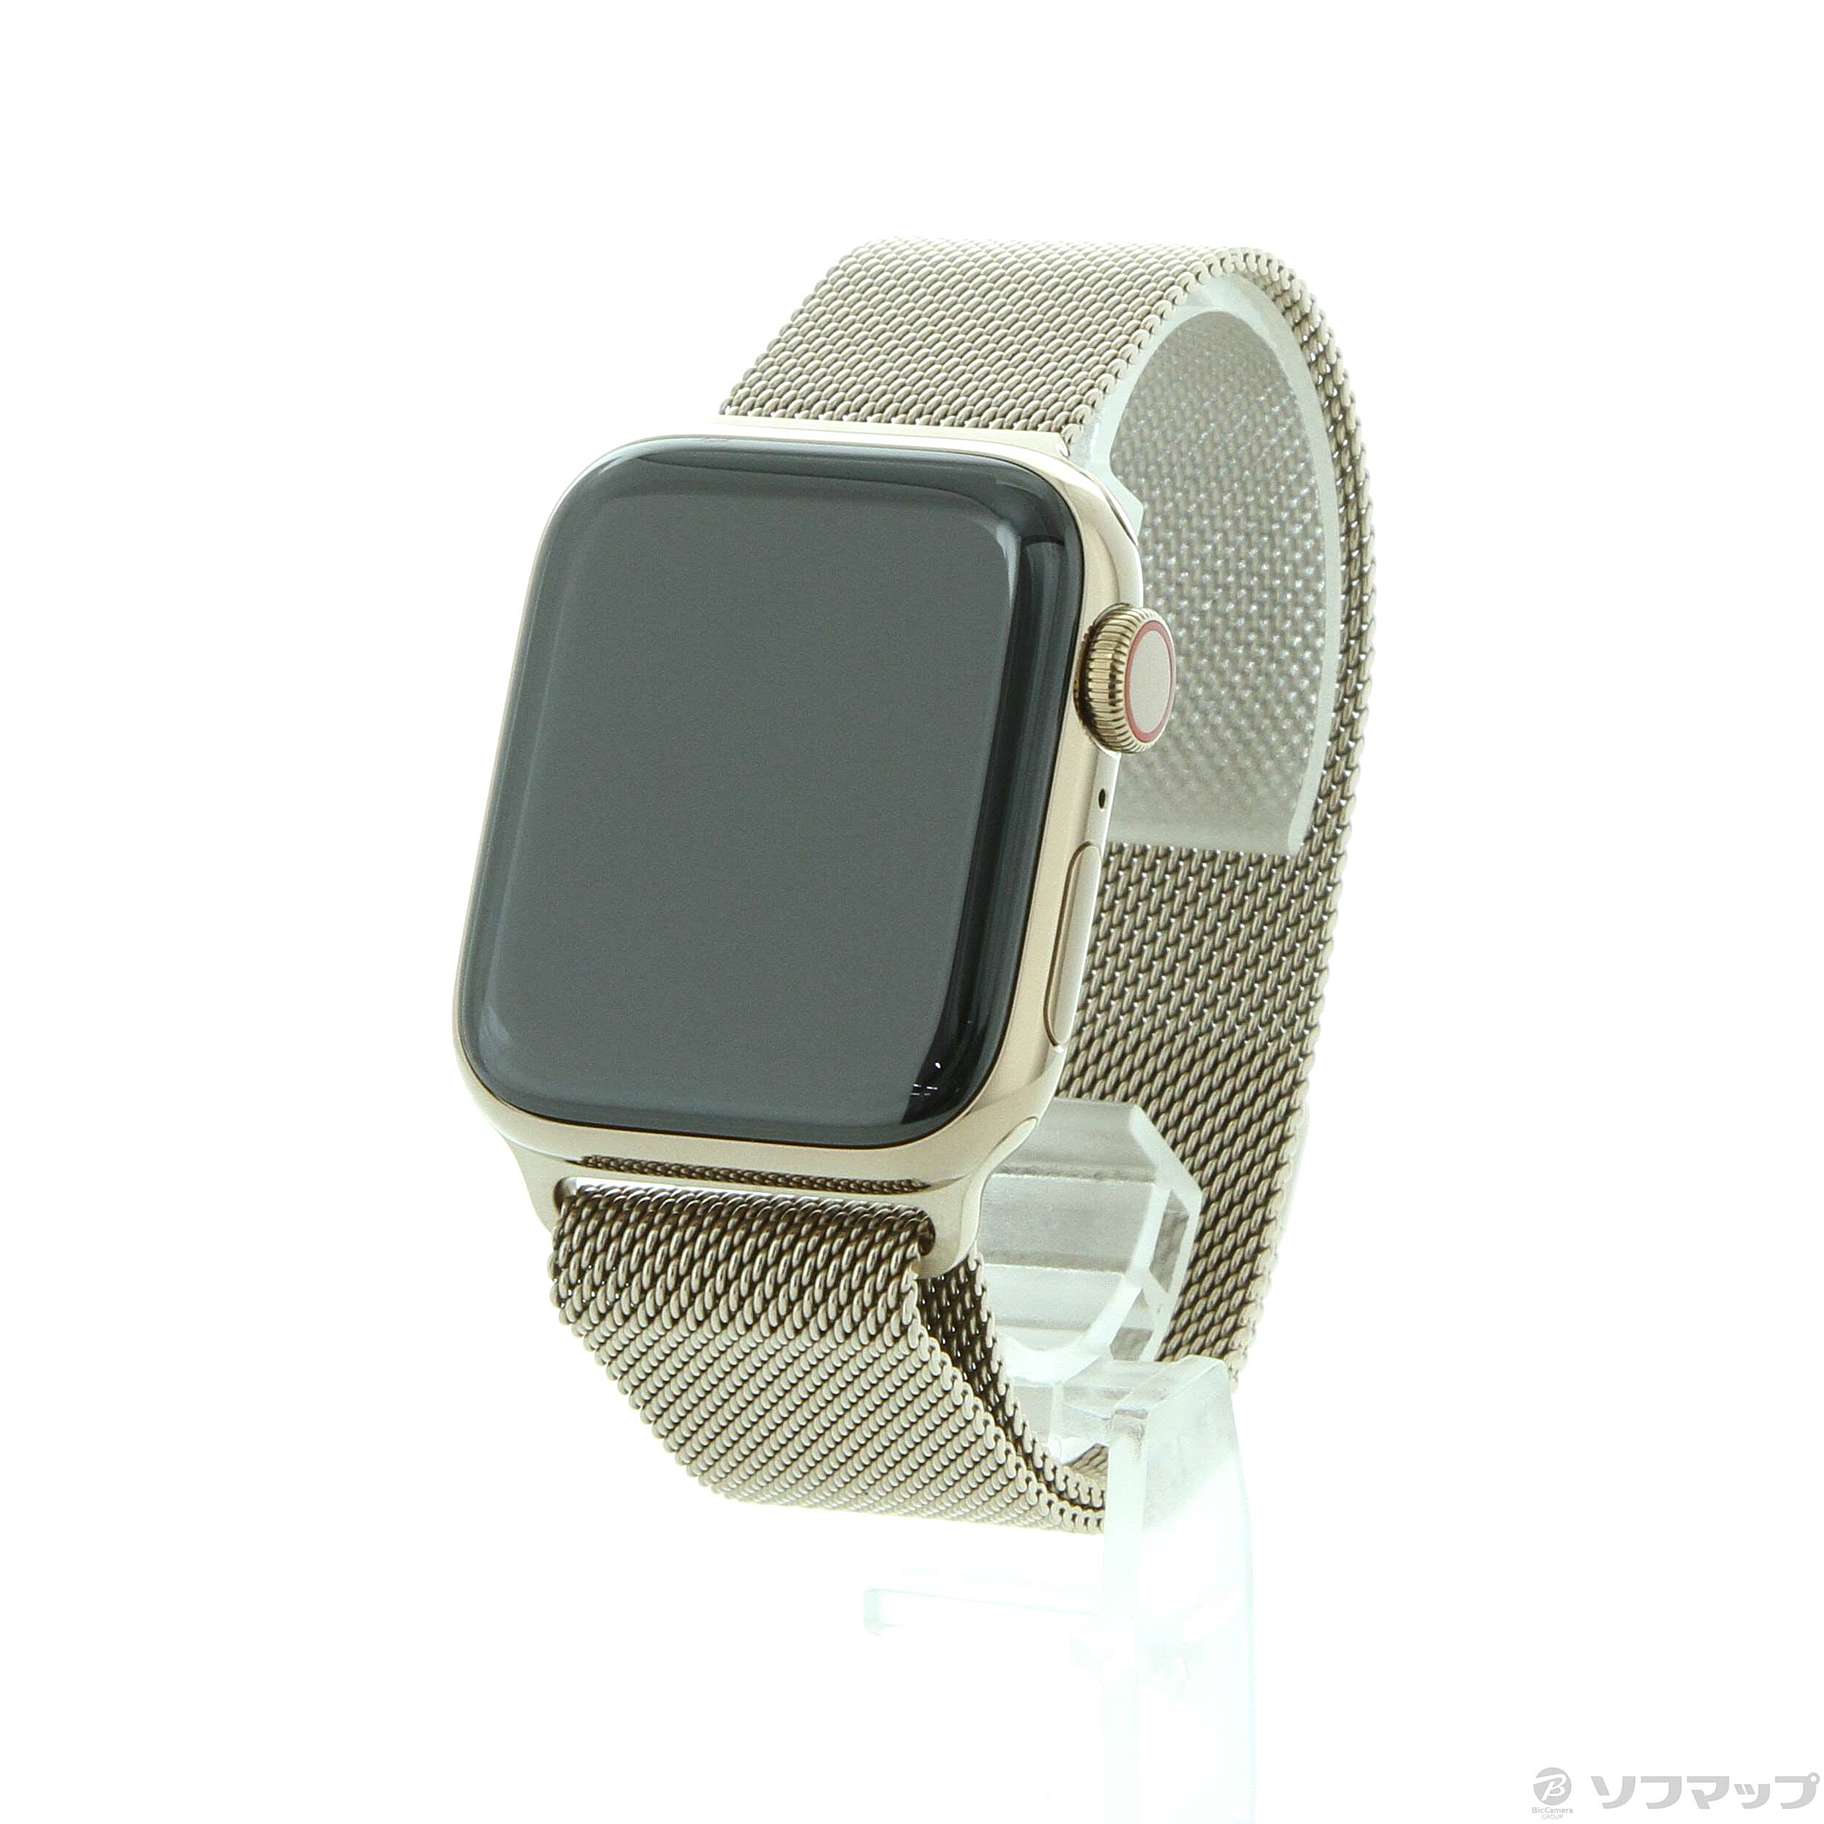 専門店の安心の1ヶ月保証付 Apple Watch series4 40mmゴールド 